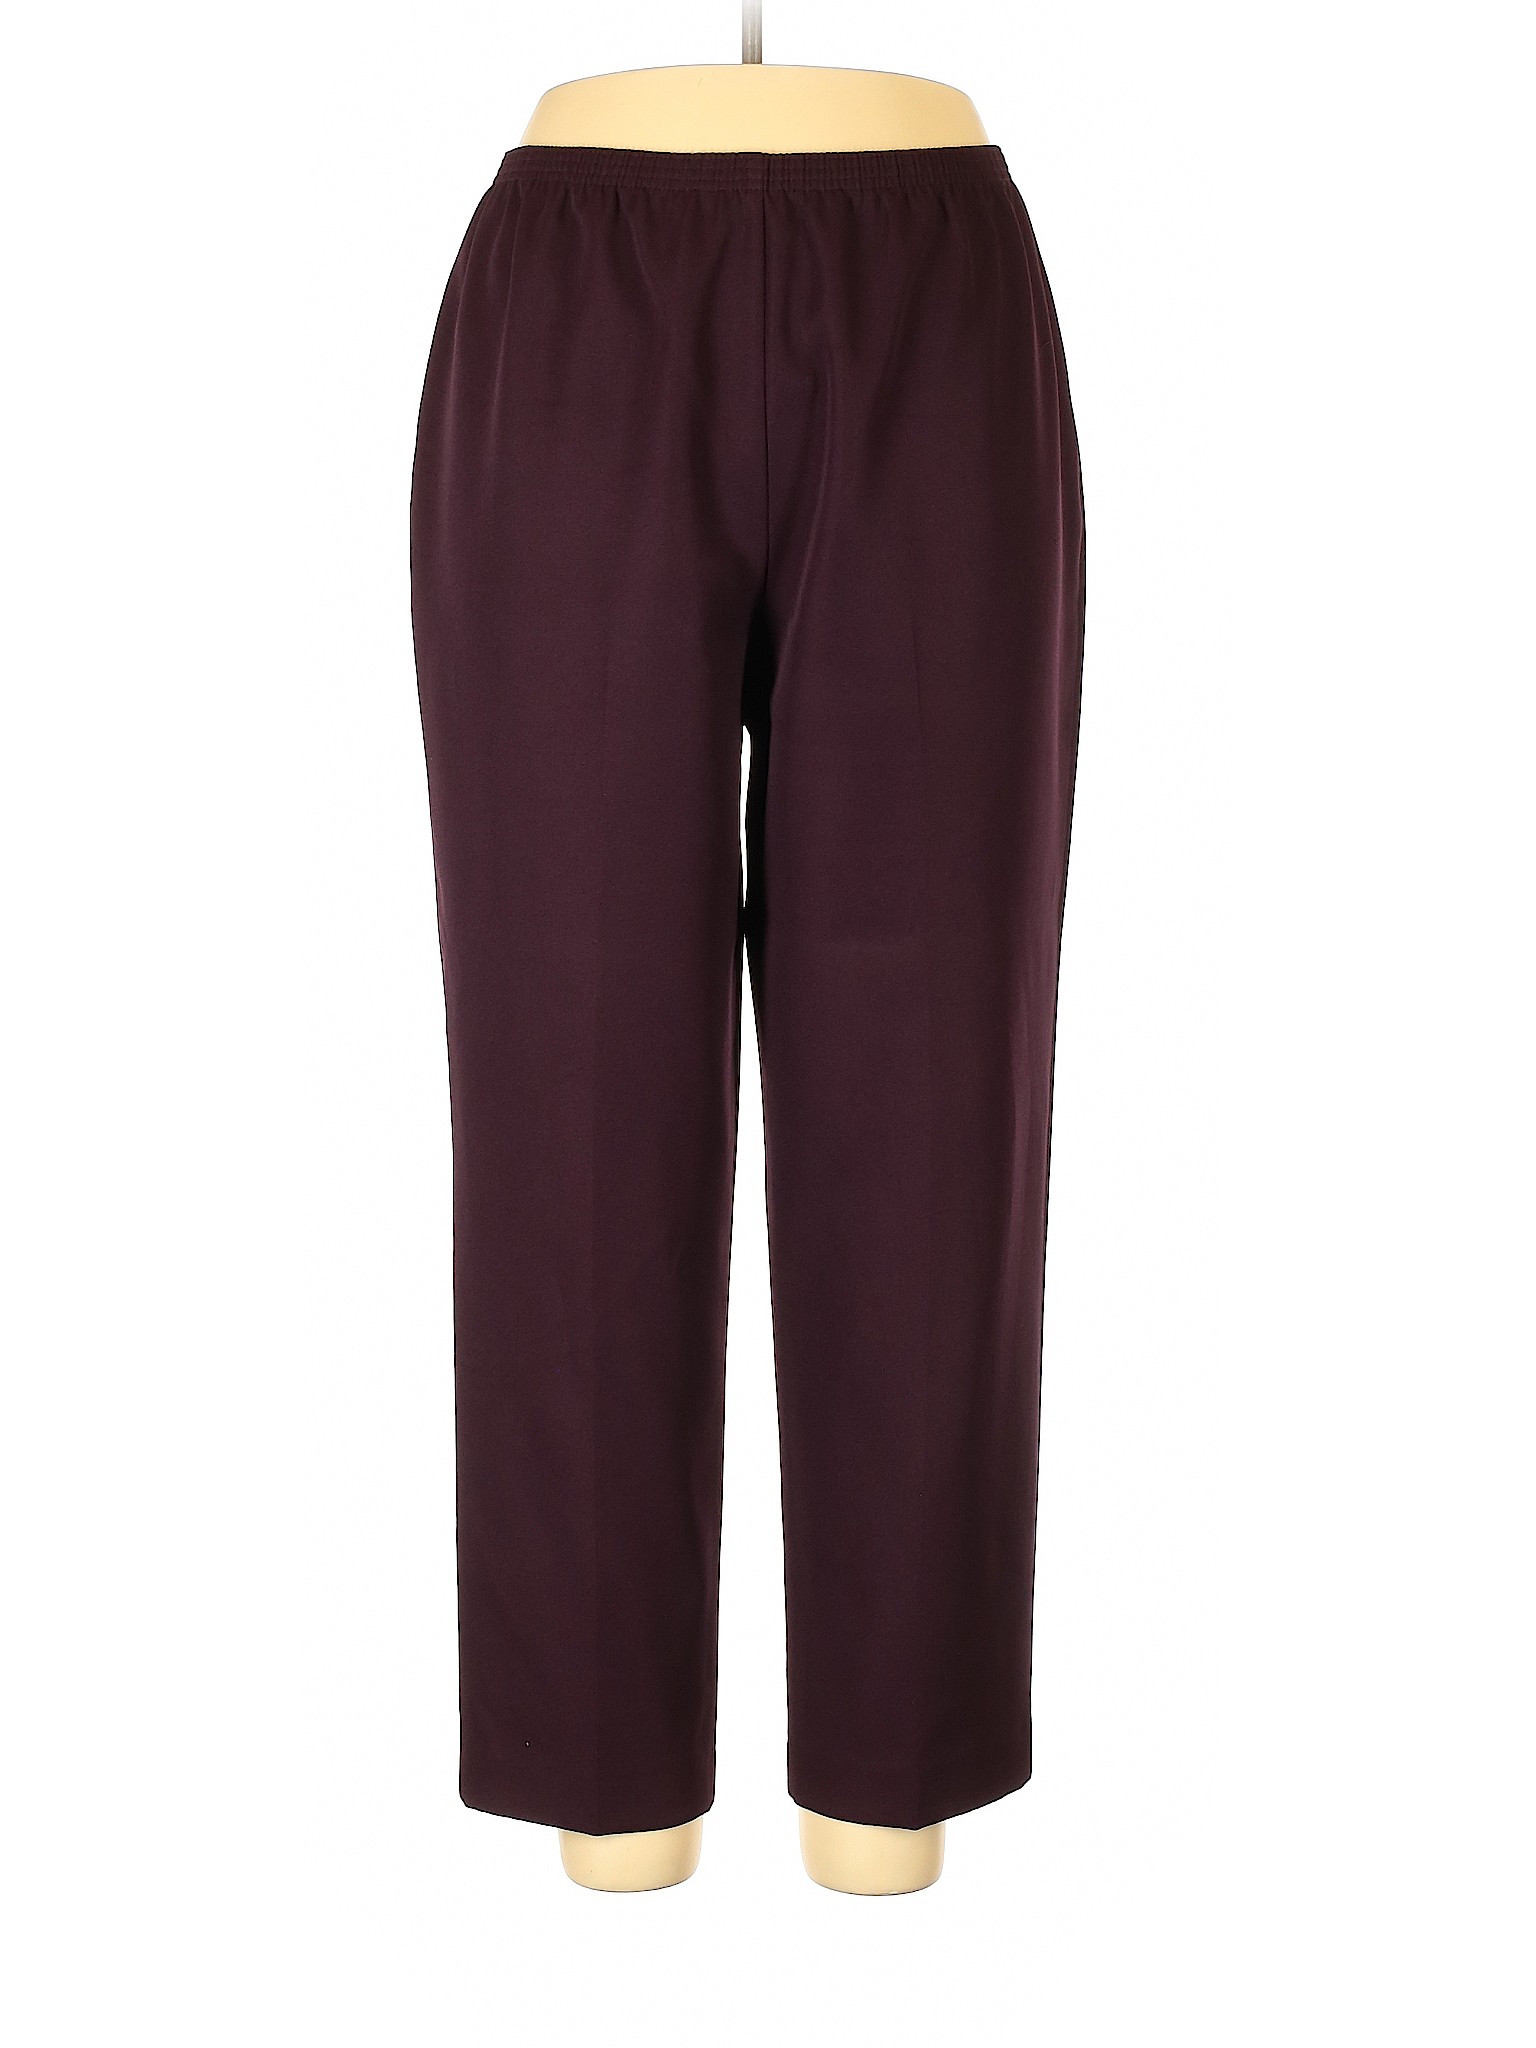 Solos by Koret Women Purple Casual Pants 18 Plus | eBay